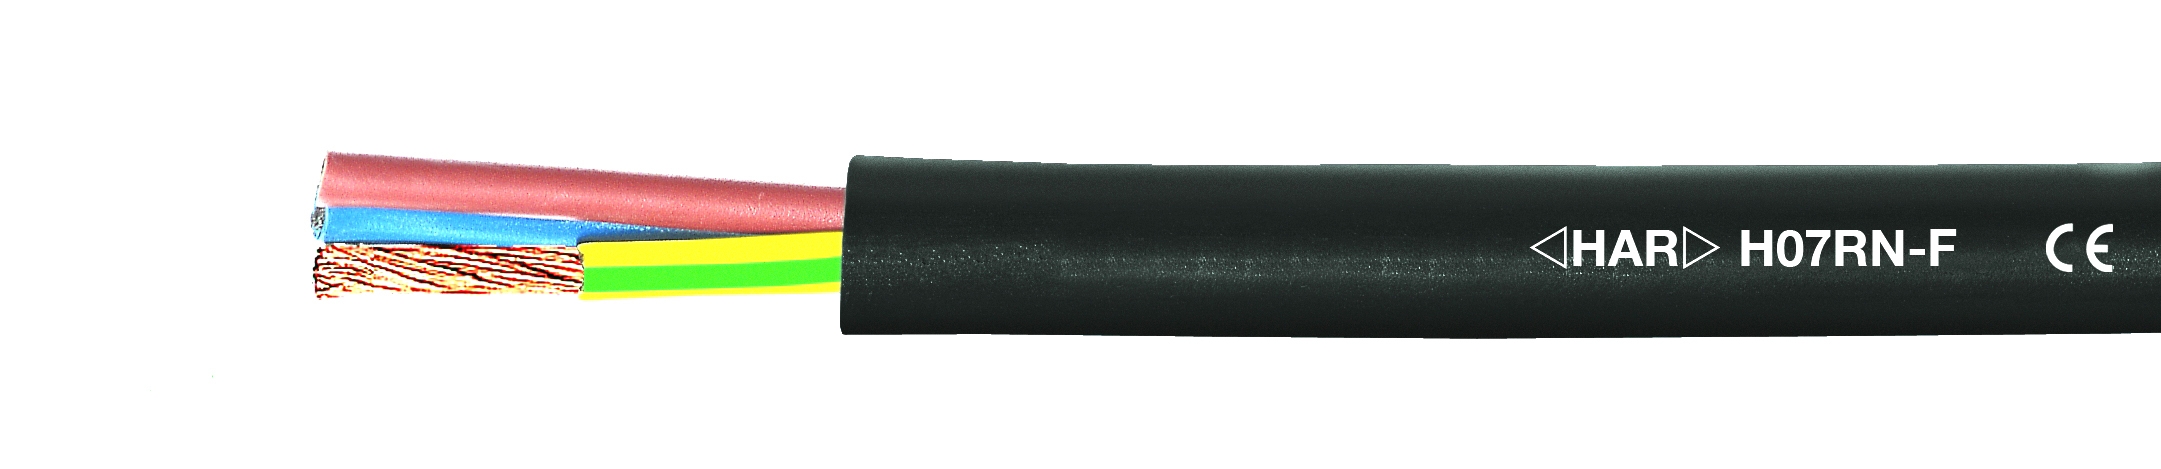 50 Meter Ring Gummikabel H07RN-F 4x1,5 qmm 1,26€/m 4G1,5mm² Gummileitung 